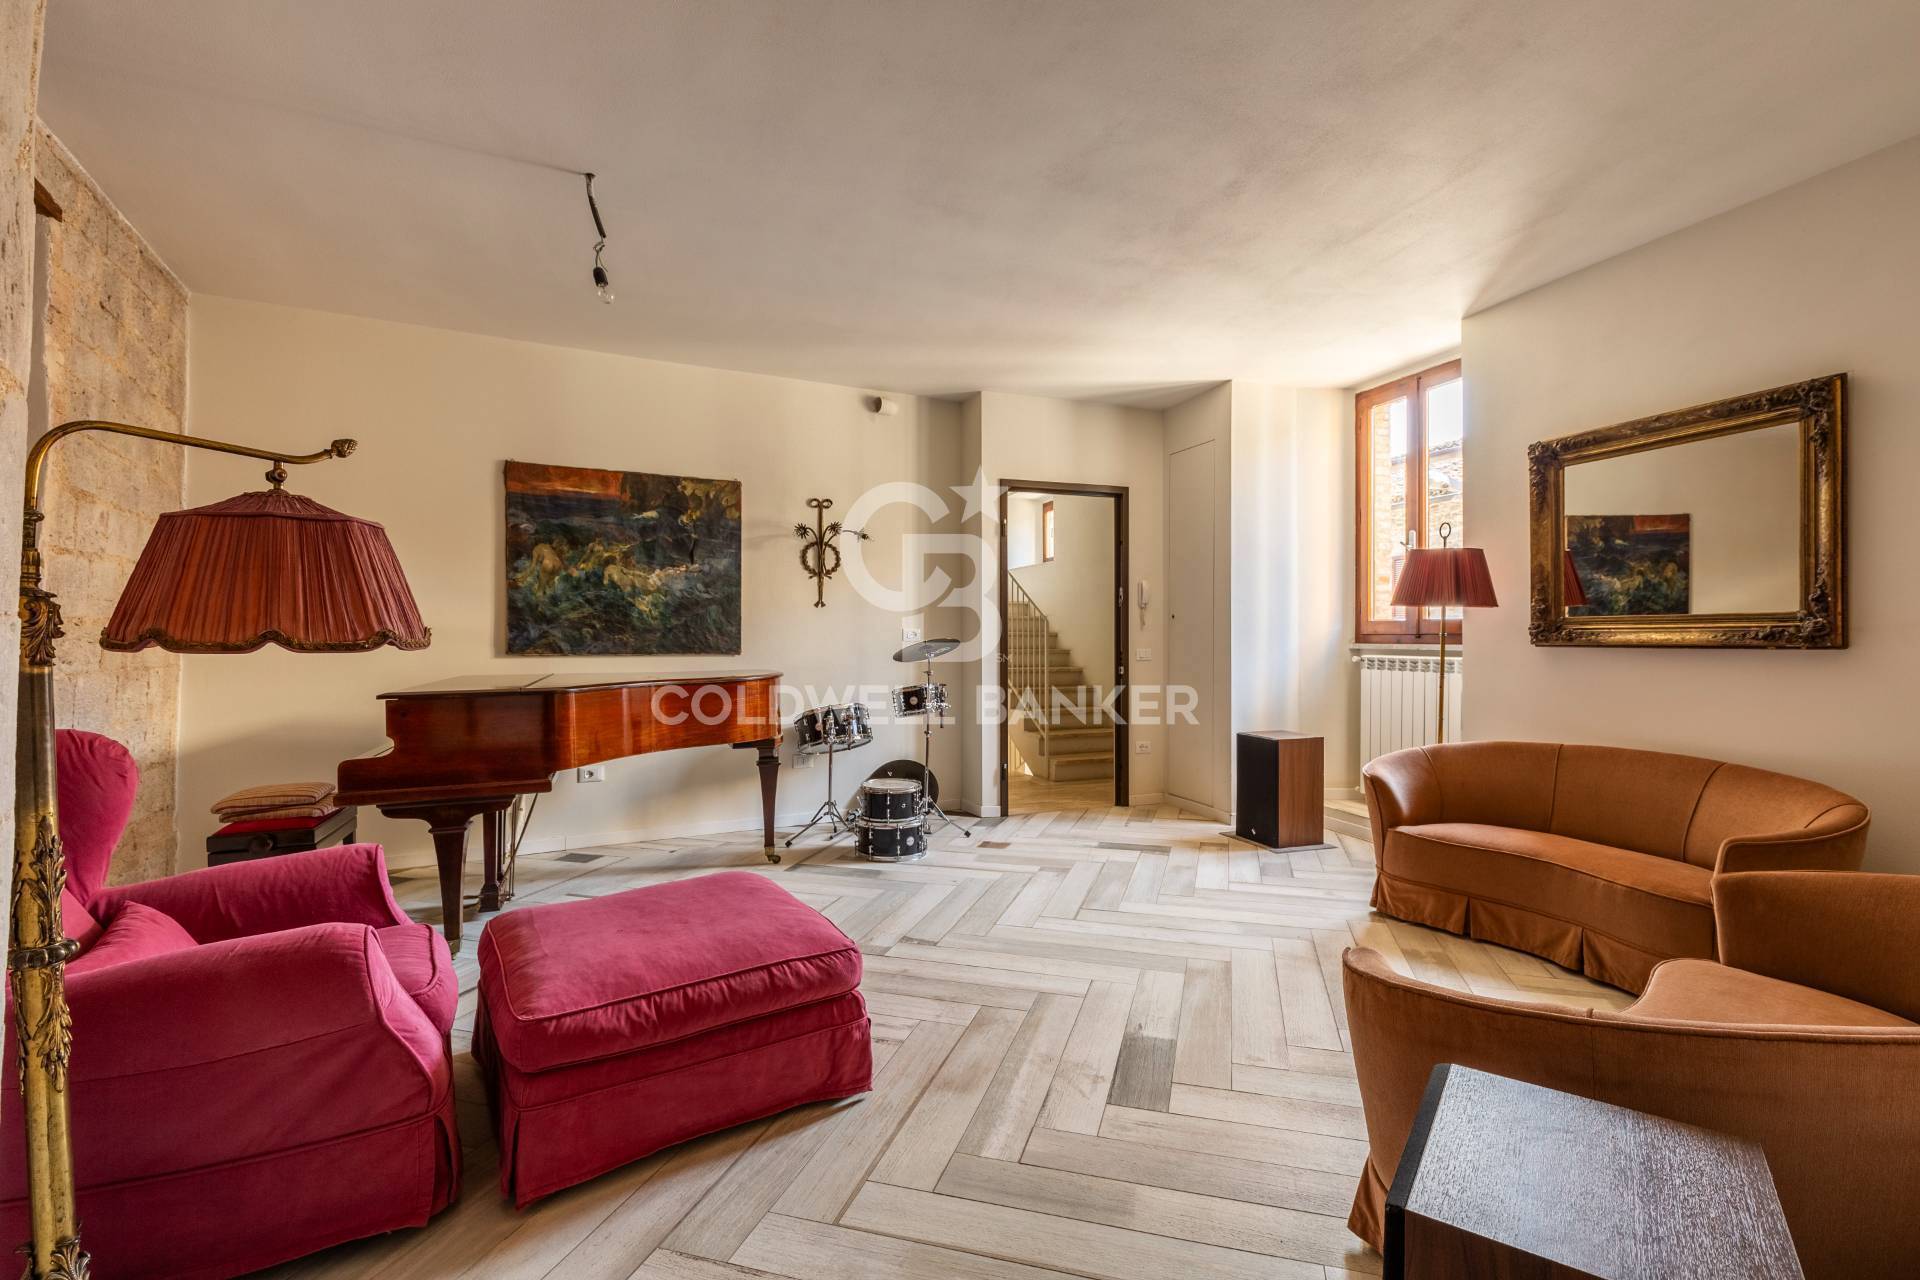 Appartamento in vendita a Gubbio, 3 locali, prezzo € 160.000 | PortaleAgenzieImmobiliari.it